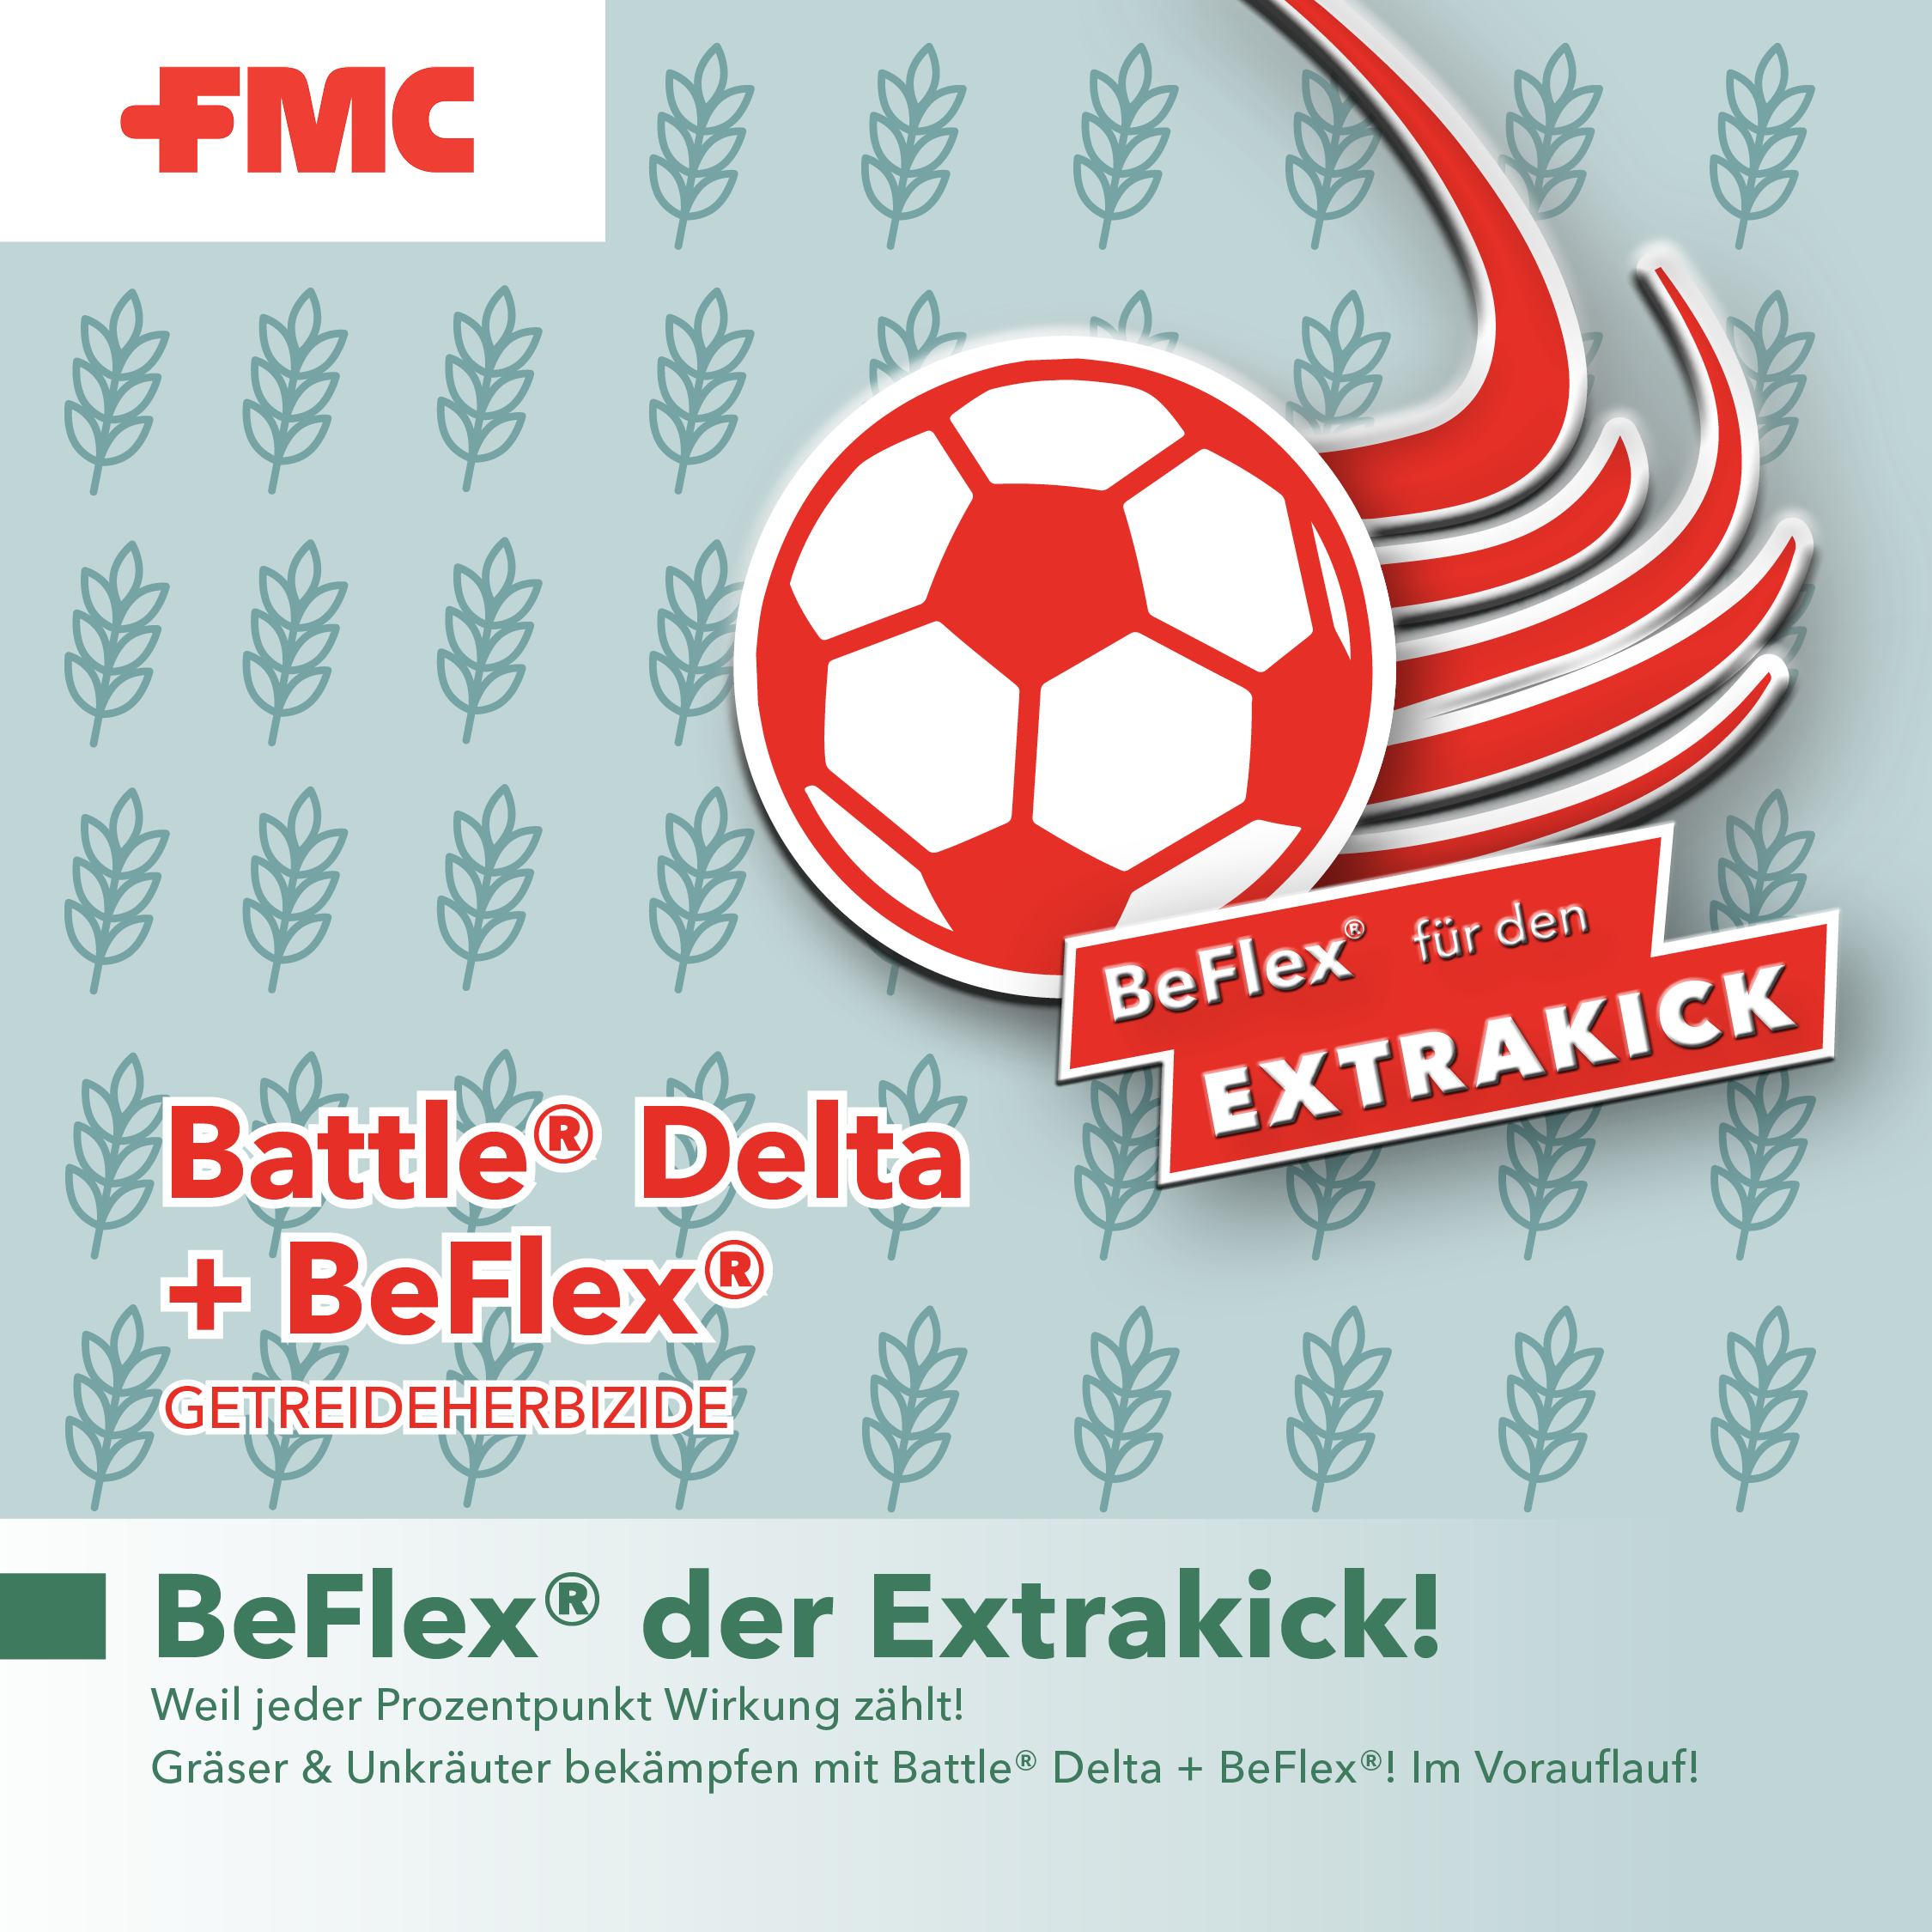 Battle Delta und BeFlex - der Extrakick